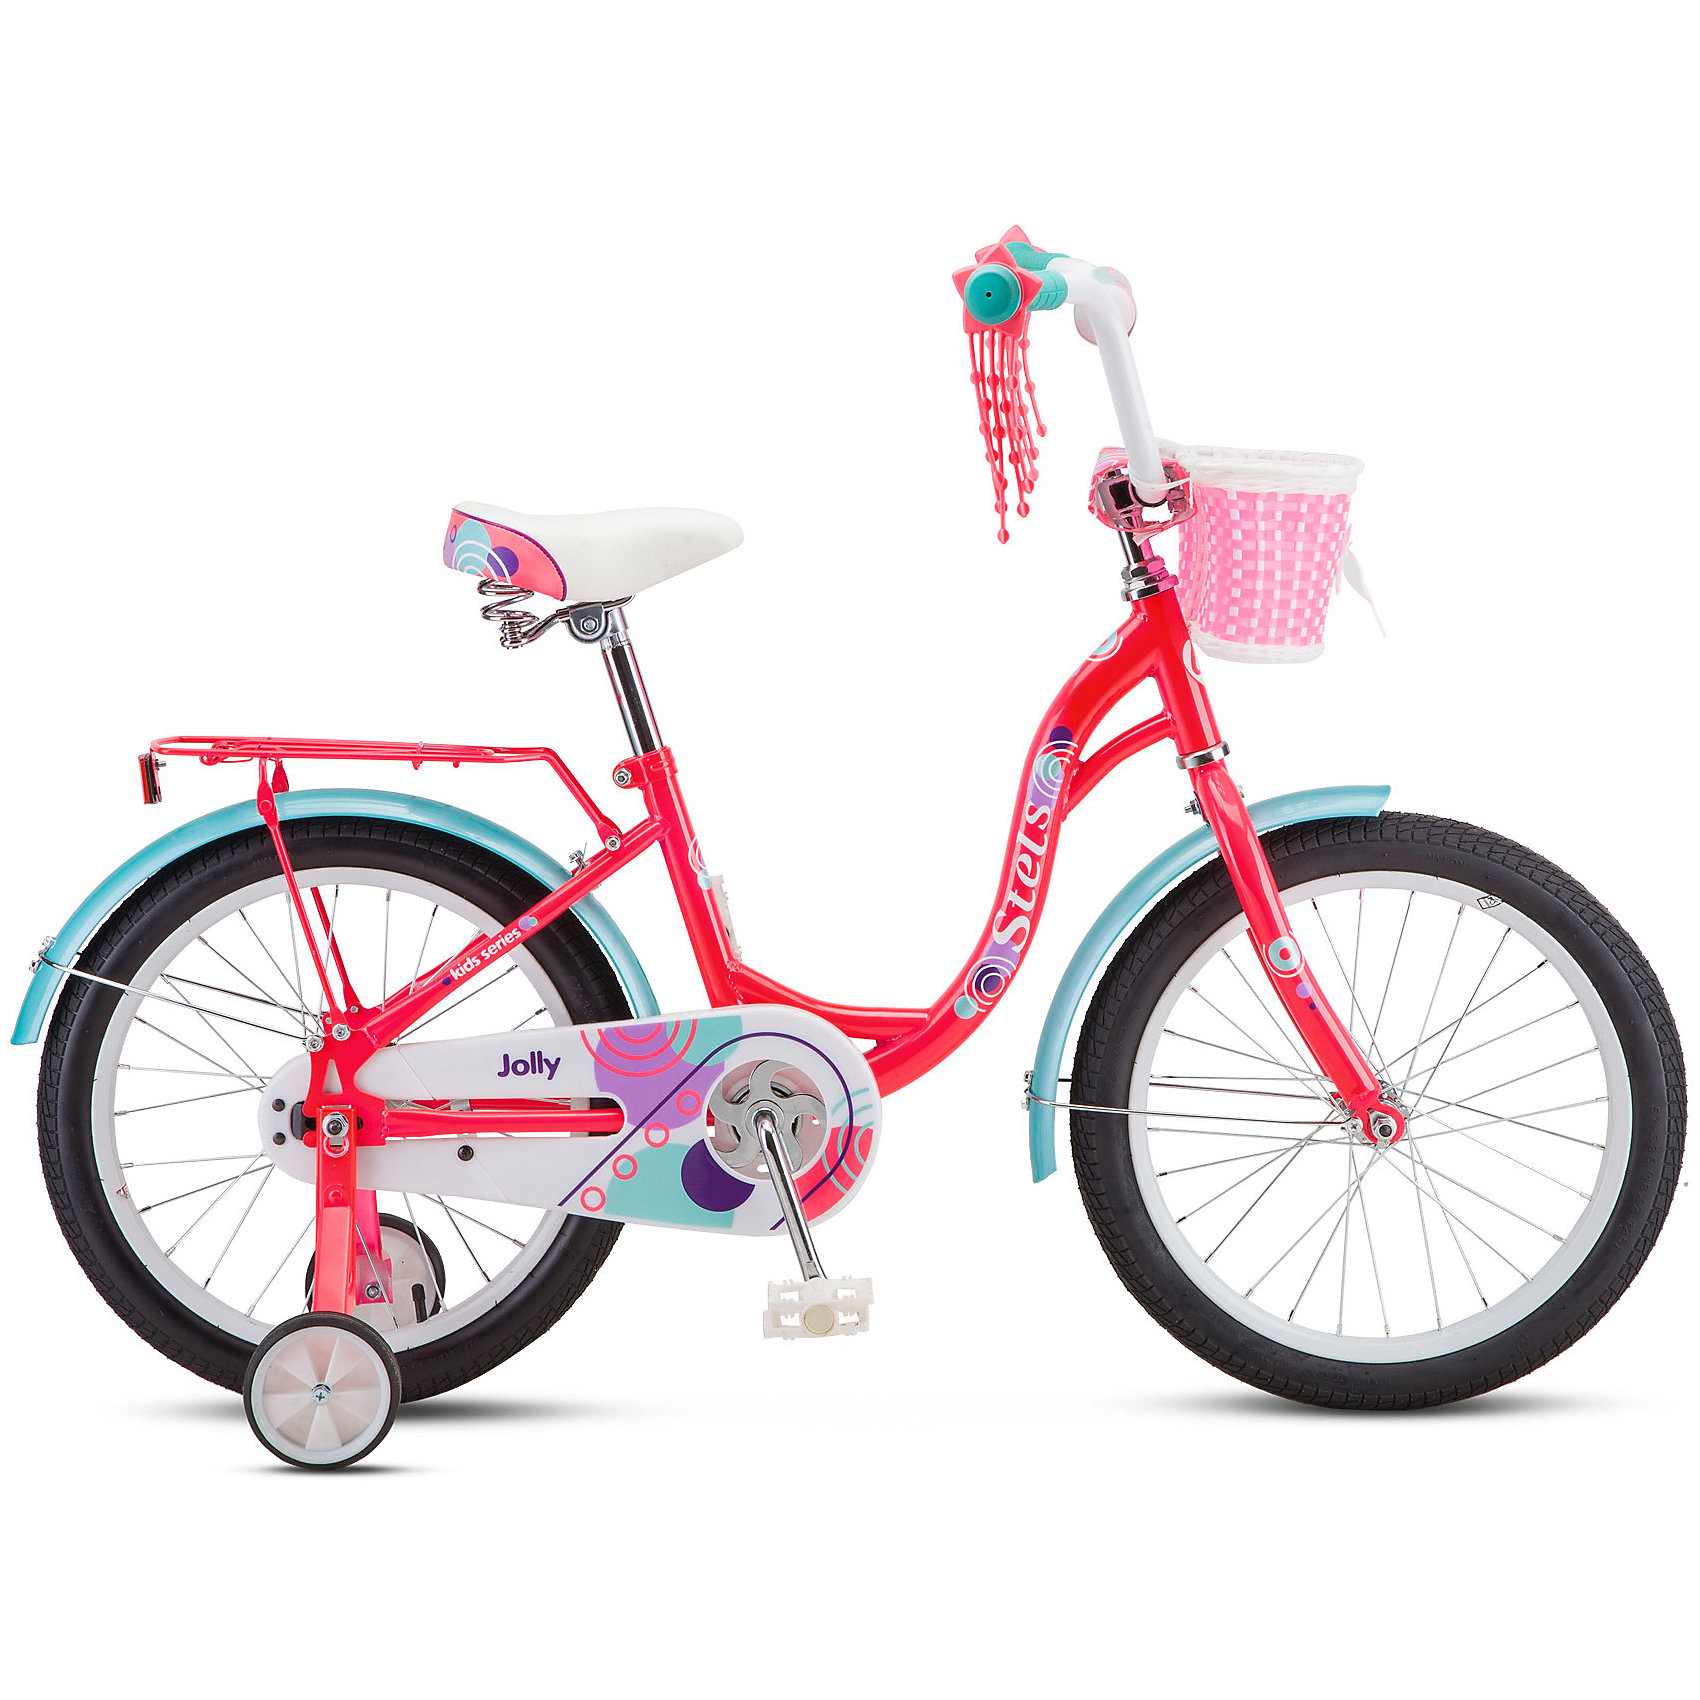 Какой велосипед купить ребенку 8 лет. Велосипед stels Jolly 18" v010 (2020). Детский велосипед stels Jolly 18 v010. Велосипед stels Jolly 14 v010. Велосипед 16" stels Flyte Lady, z011.